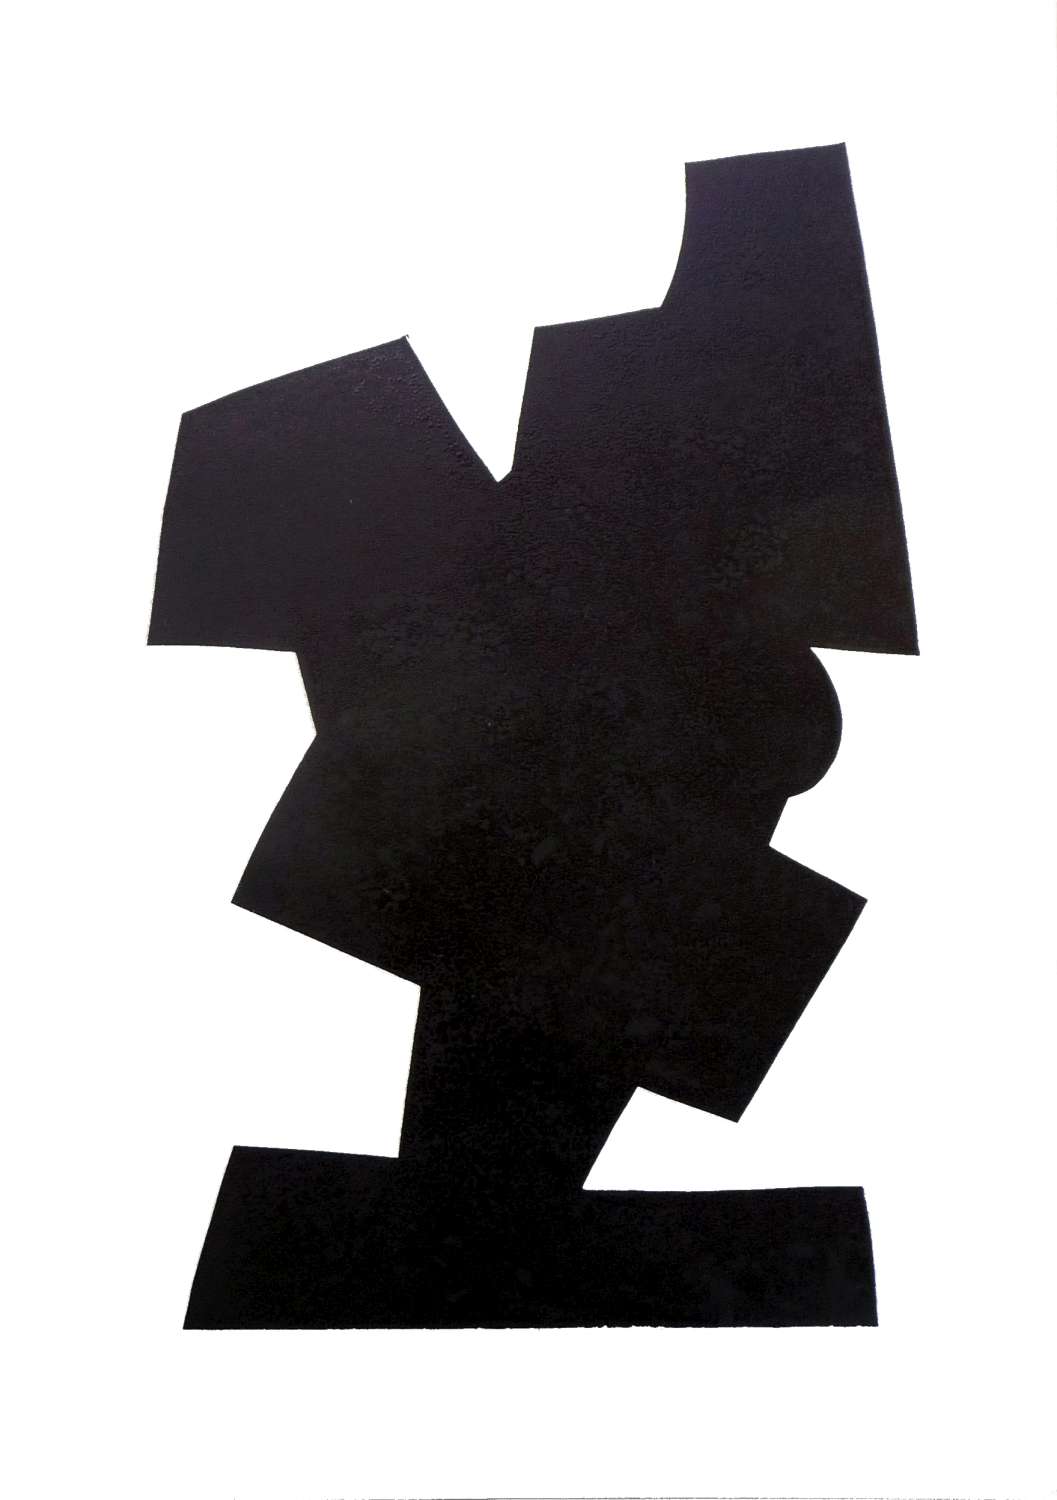 588, Schwarzer Mann, 70 x 49.5 cm, Holzschnitt, 4-16